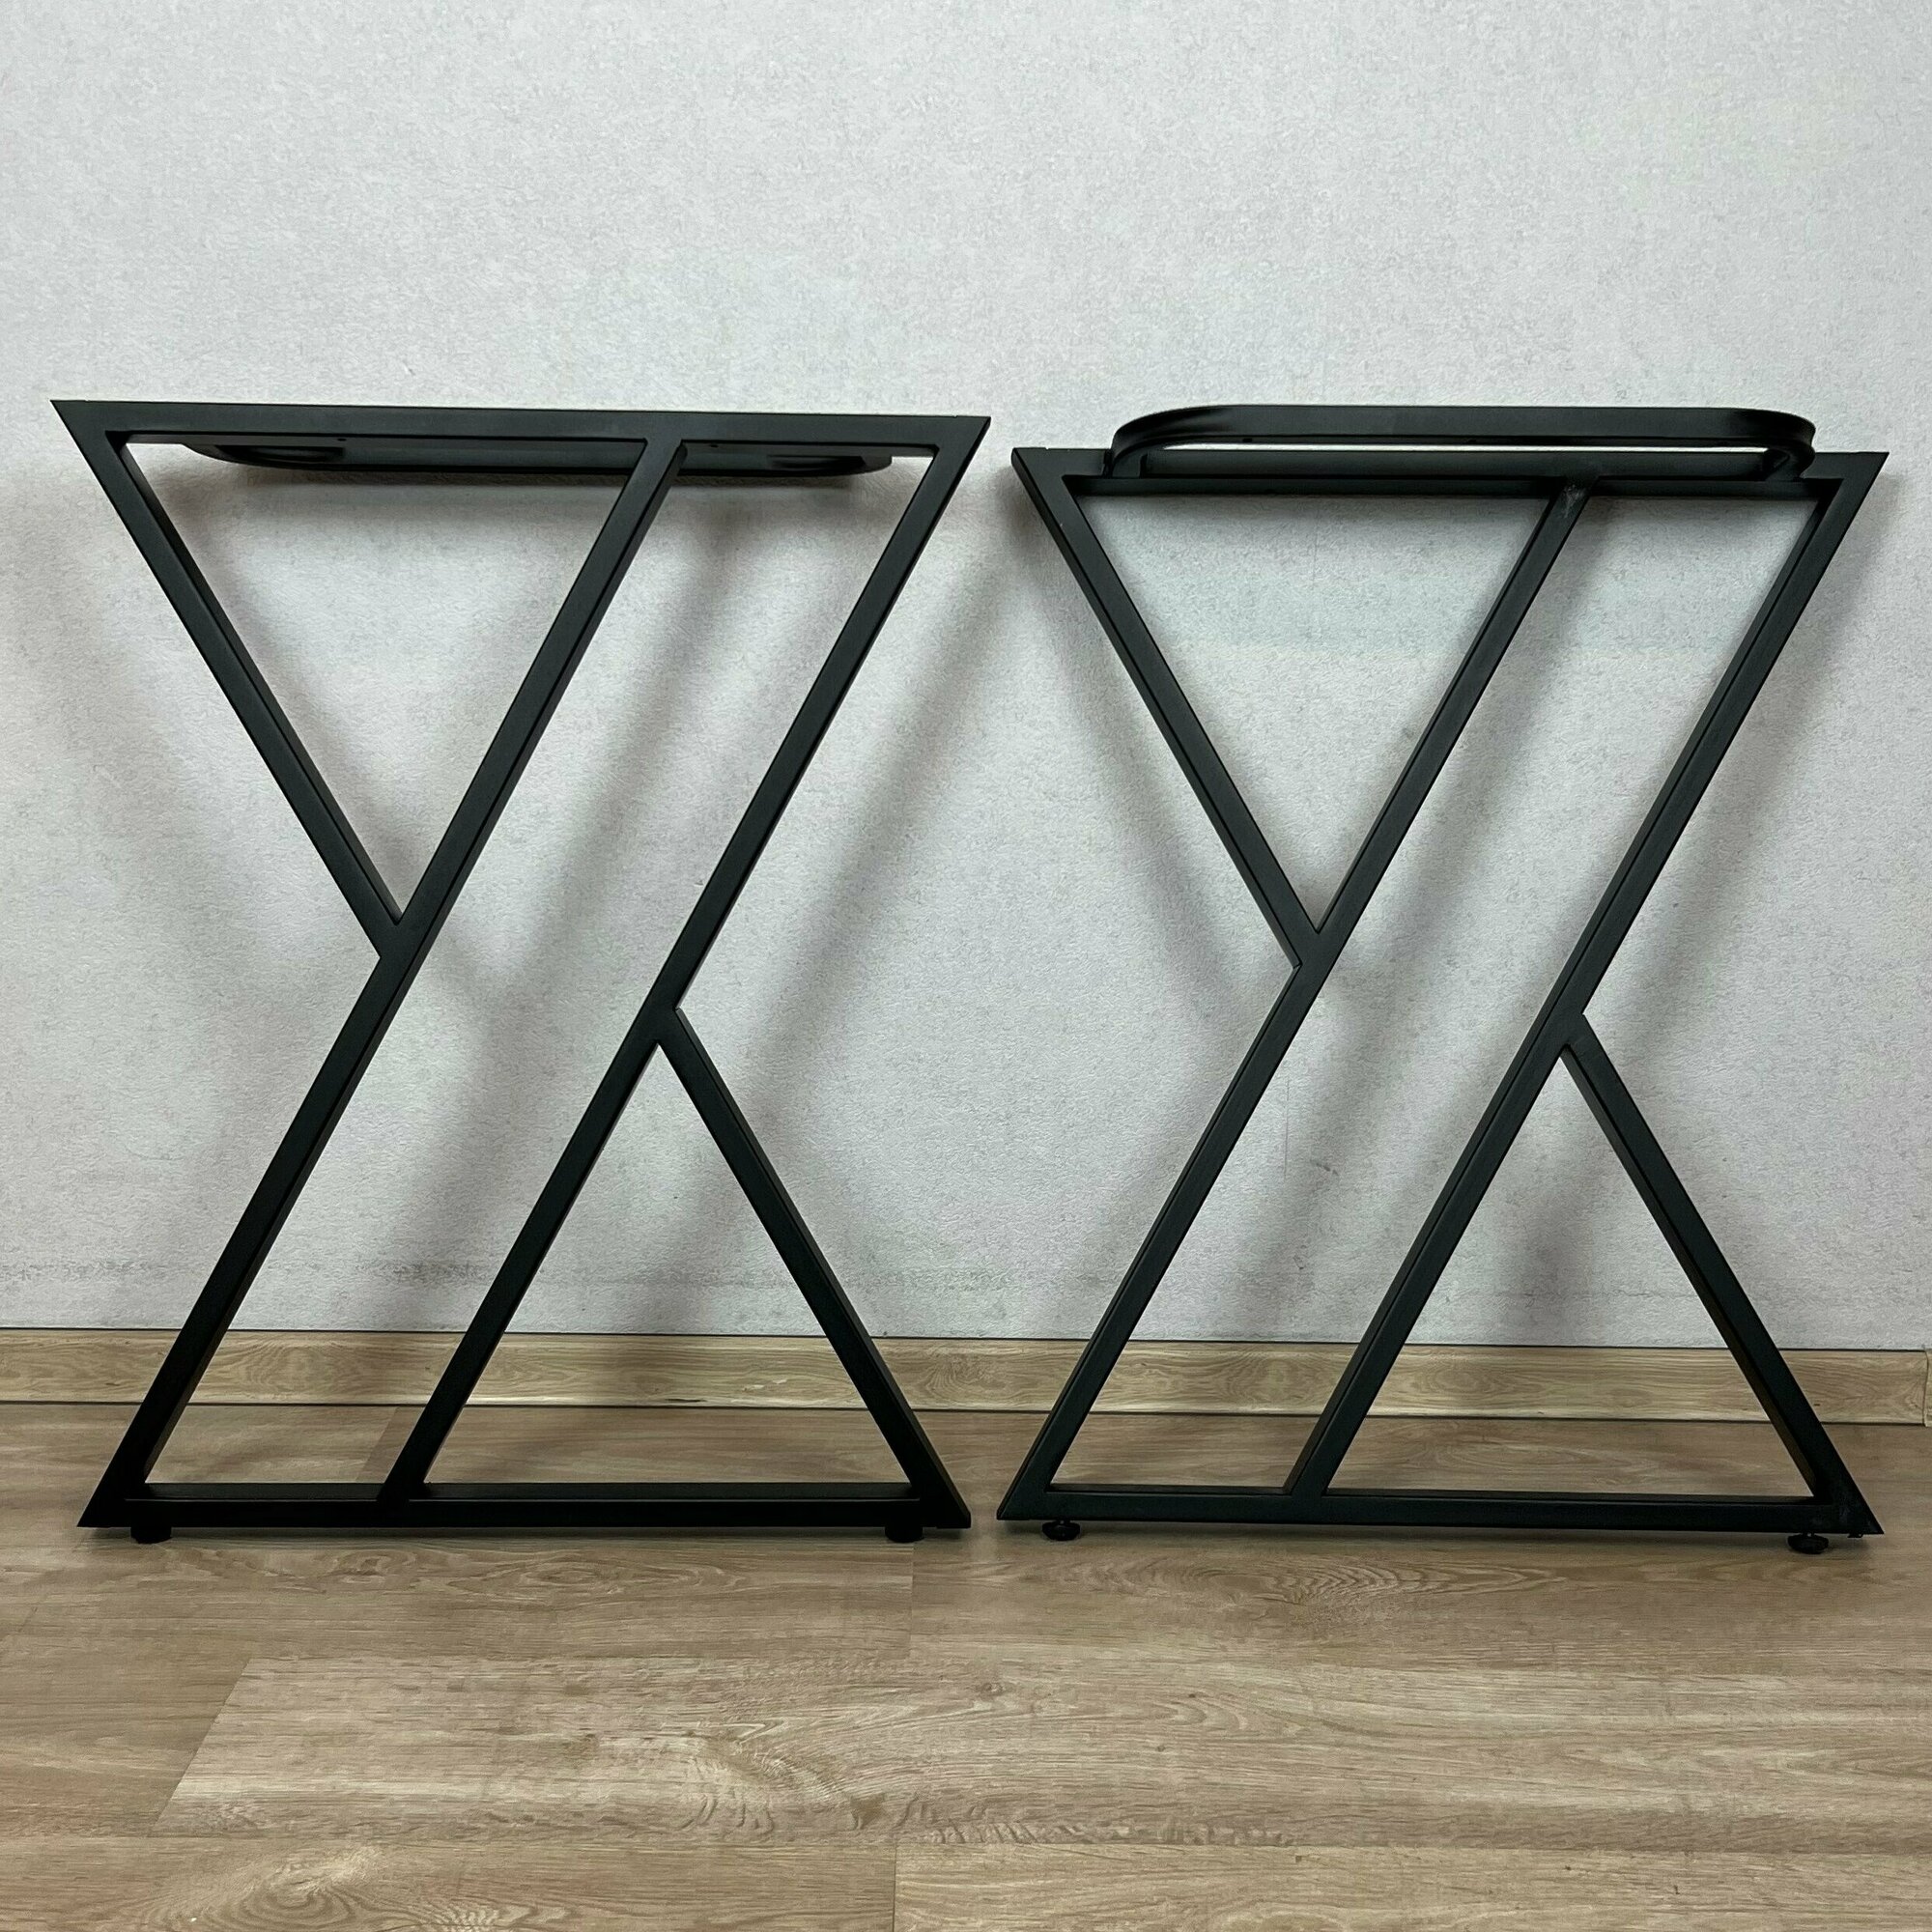 Ножки для стола Loft Z-образные, опоры для стола лофт 68,5х71 см, подстолья металлические регулируемые, порошковая покраска, черные, 2 шт.